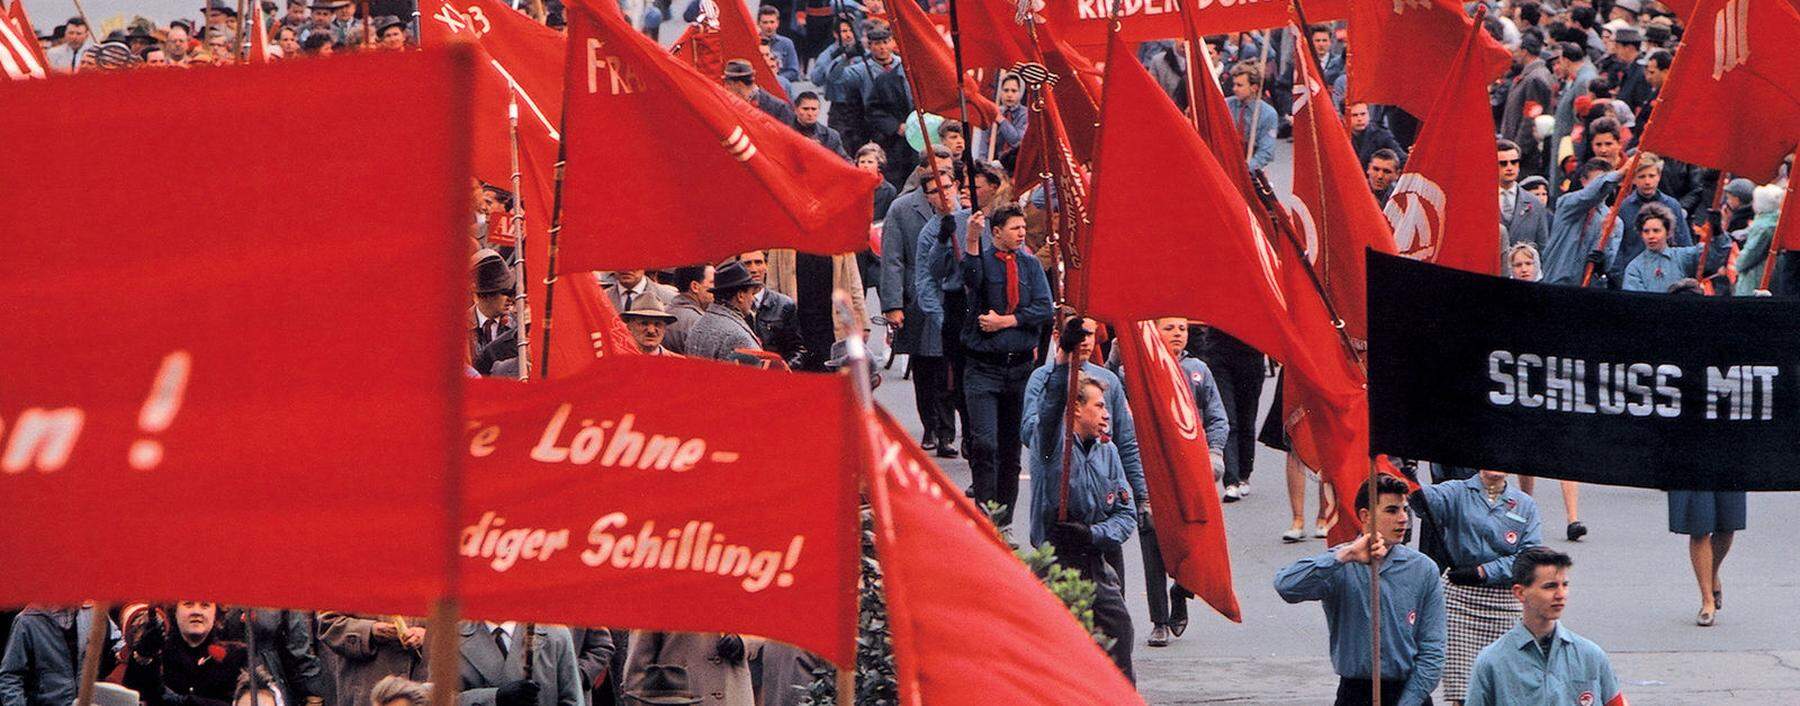 So sahen 1.-Mai-Demonstrati-onen in den 1970er-Jahren aus.